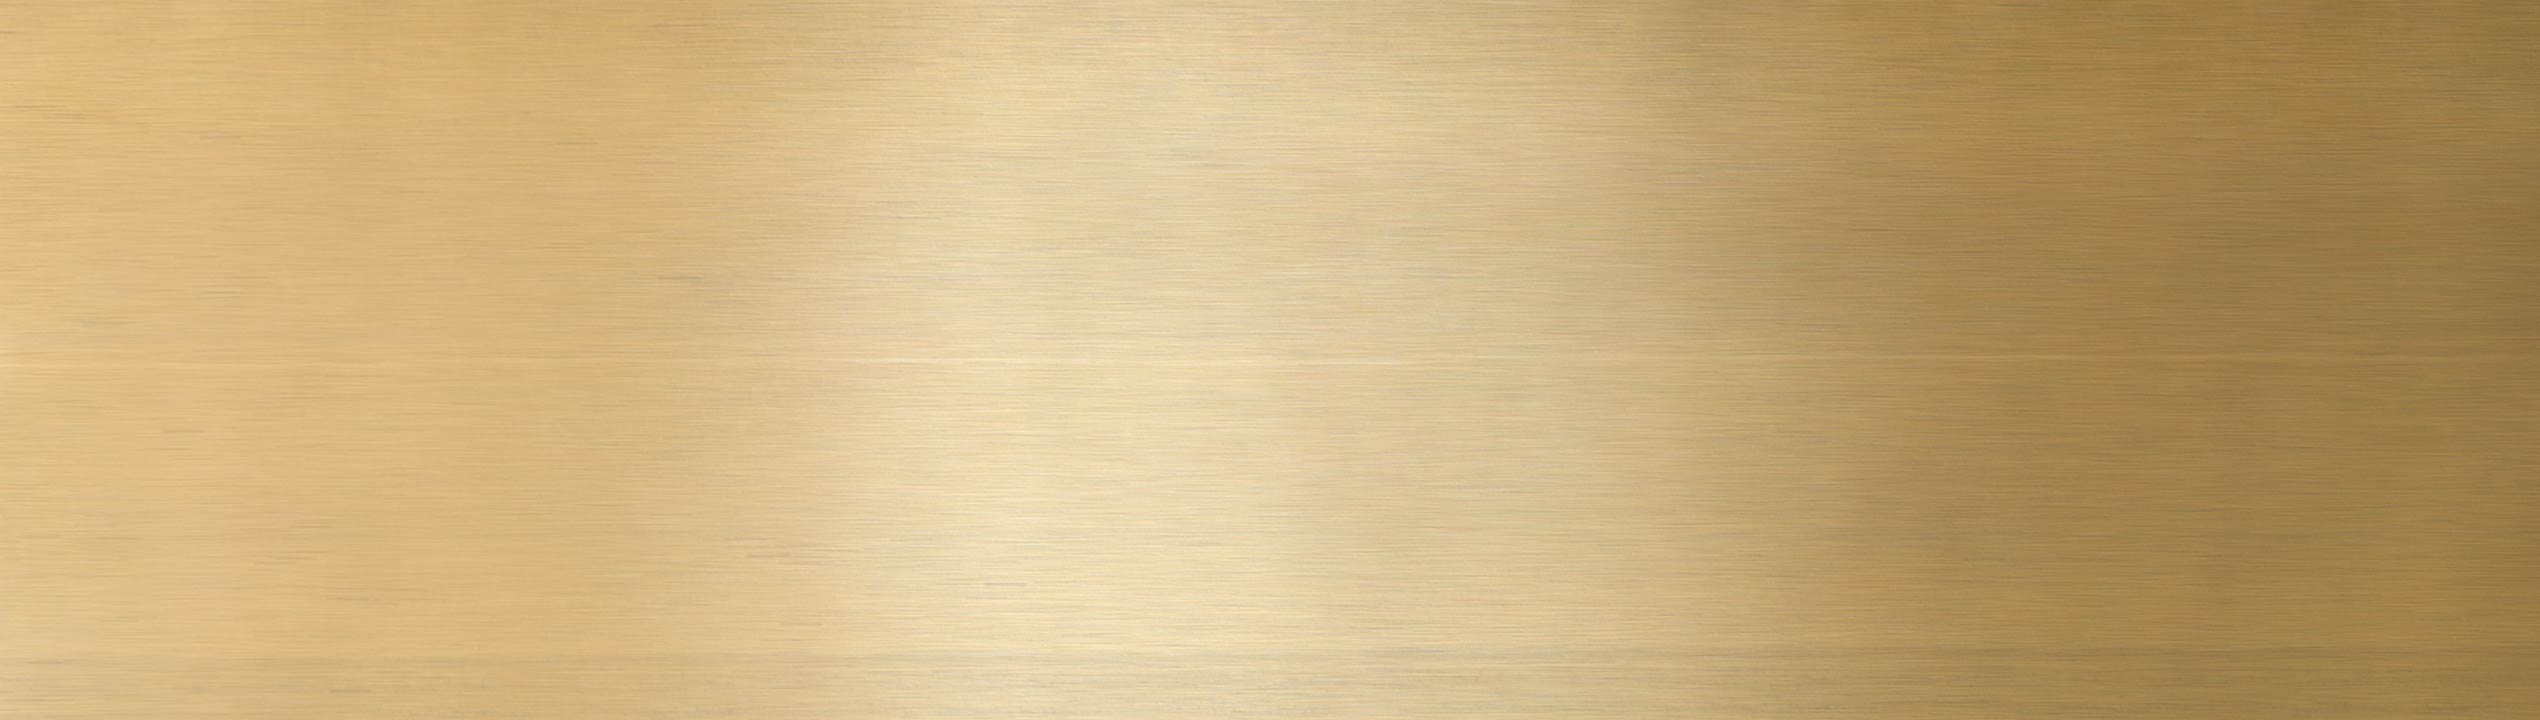 Pangocho Jinchao-Große Metallplatte Dünne Messingstreifen Dicke 0,01/0,02/0,03/0,05/0,08mm Messingblech Goldfilm Messingfolie Messingplatte H62 100mm Breite 100% hohe Qualität 